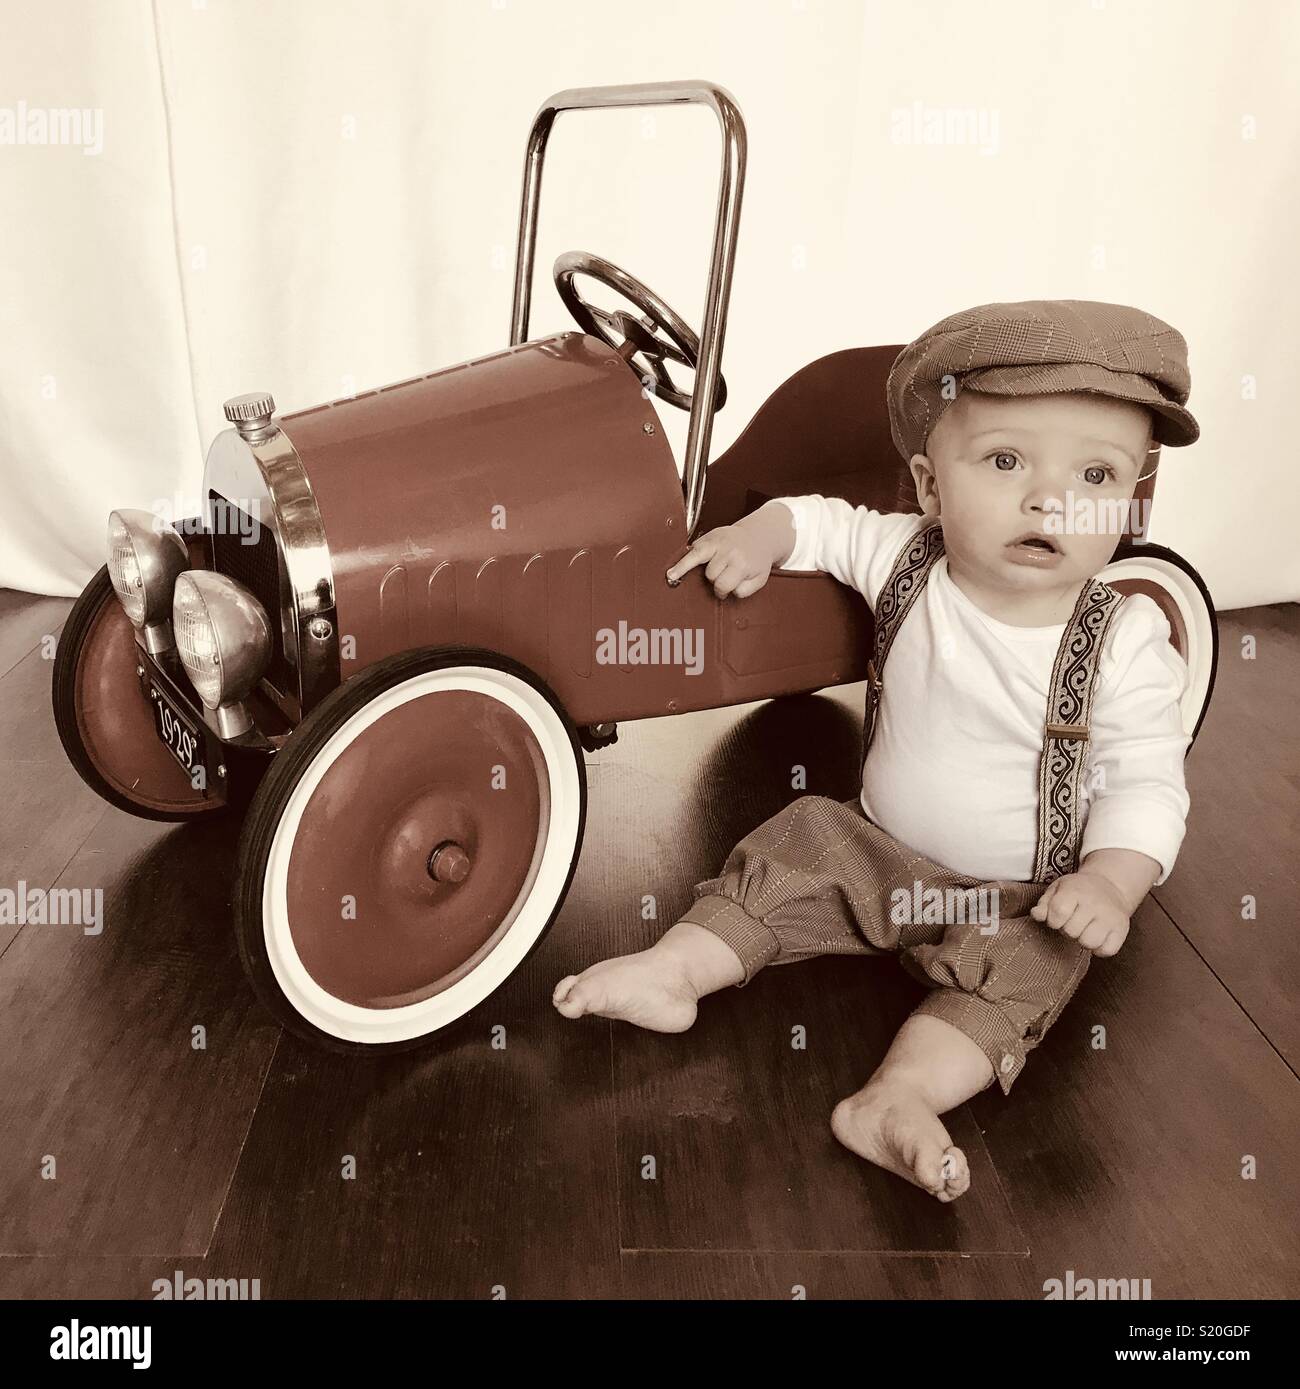 Cute Baby in einem Aktuelles boy Outfit spielen mit seinen antiken Auto feilbieten. Diese niedlichen Baby trägt Braun tan Schlüpfer, Hosenträger und ein aktuelles Boy hat während neben seinem Auto sitzen. Stockfoto